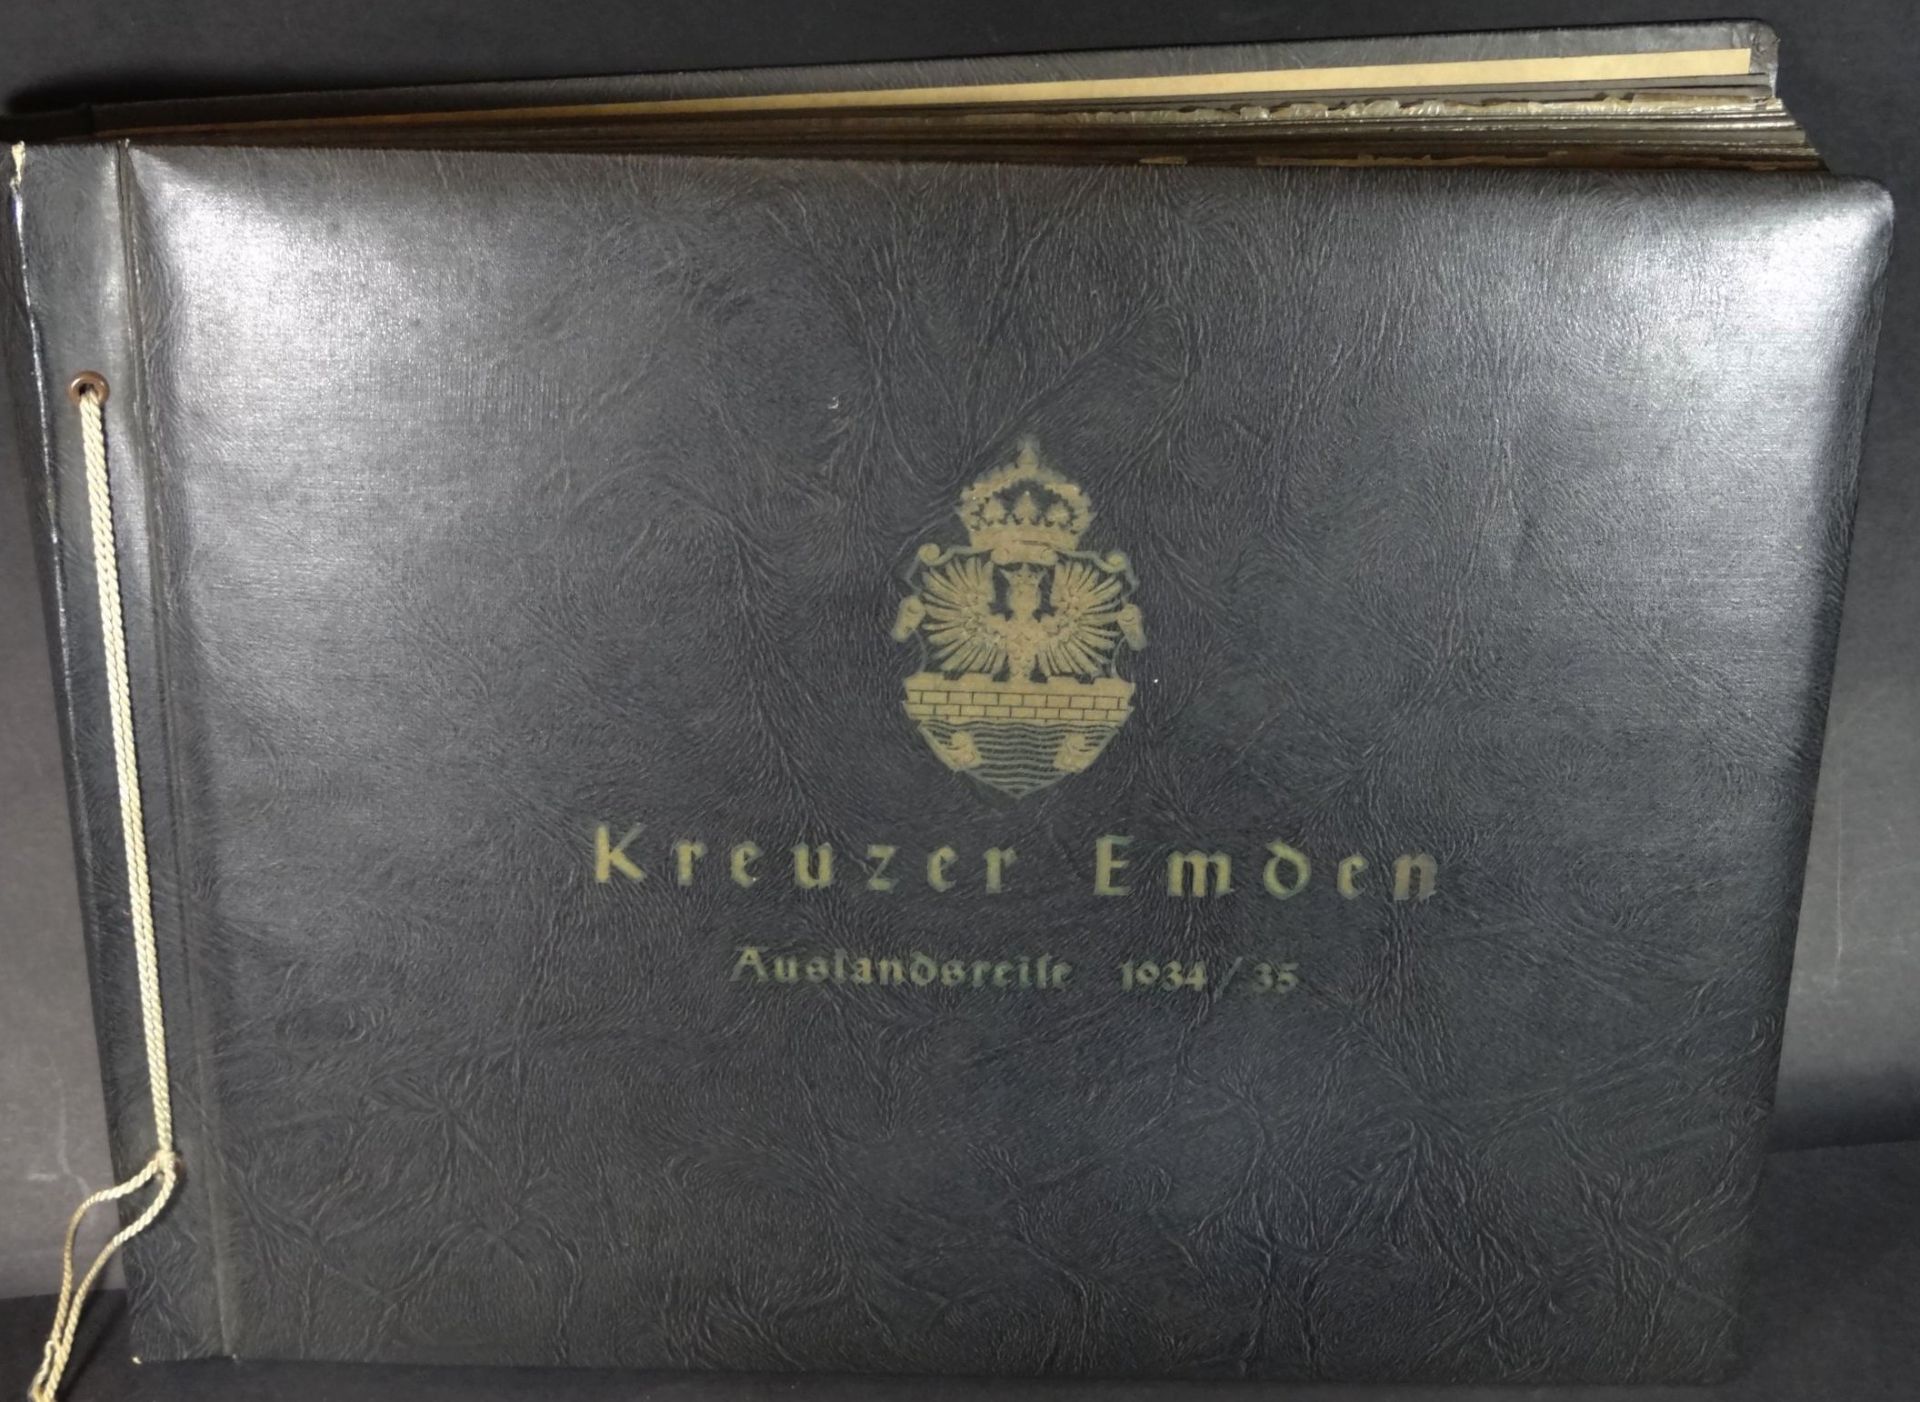 Fotoalbum "Kreuzer Emden Auslandsreise 1934/35", 253 Fotos, grossteils beschriftet